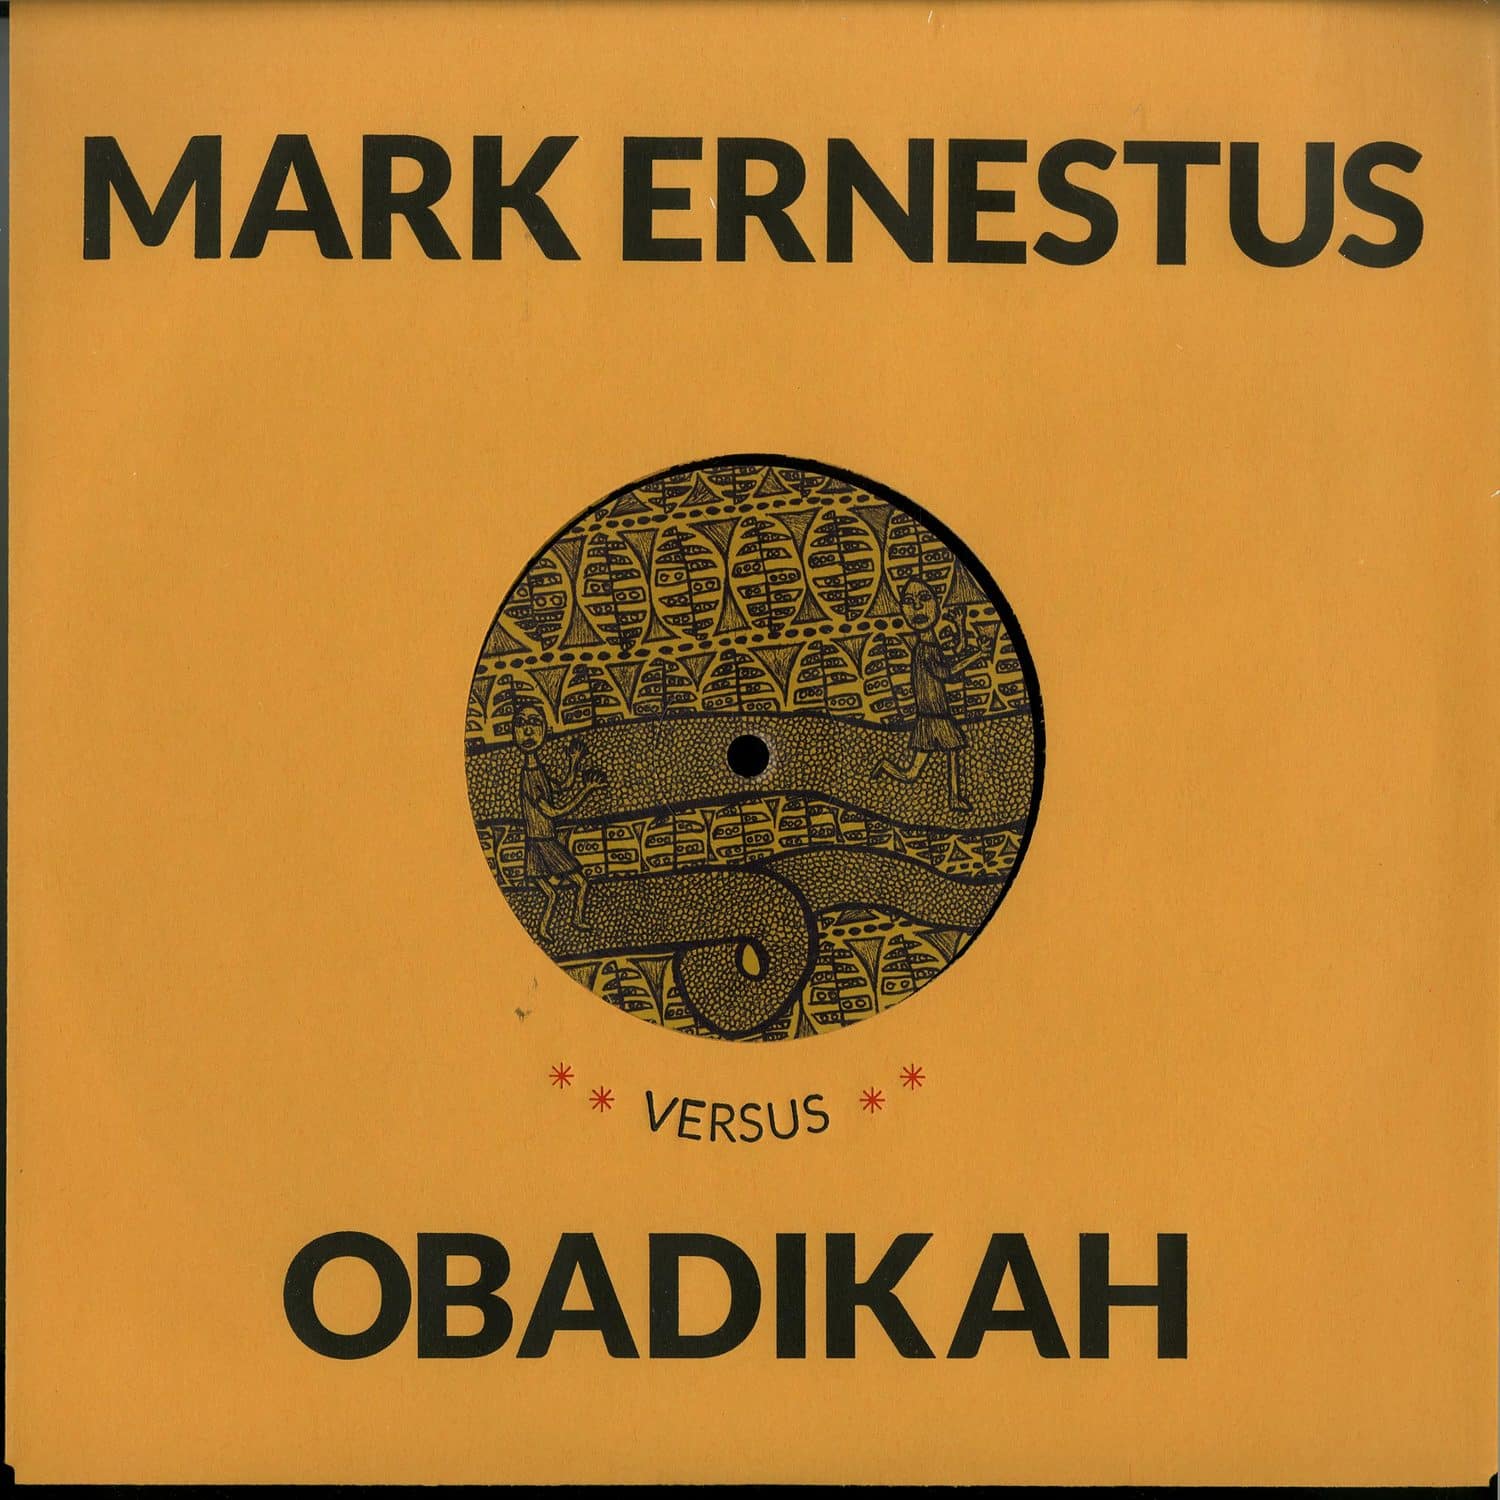 Mark Ernestus vs. Obadikah - APRIL / APRIL DUB 